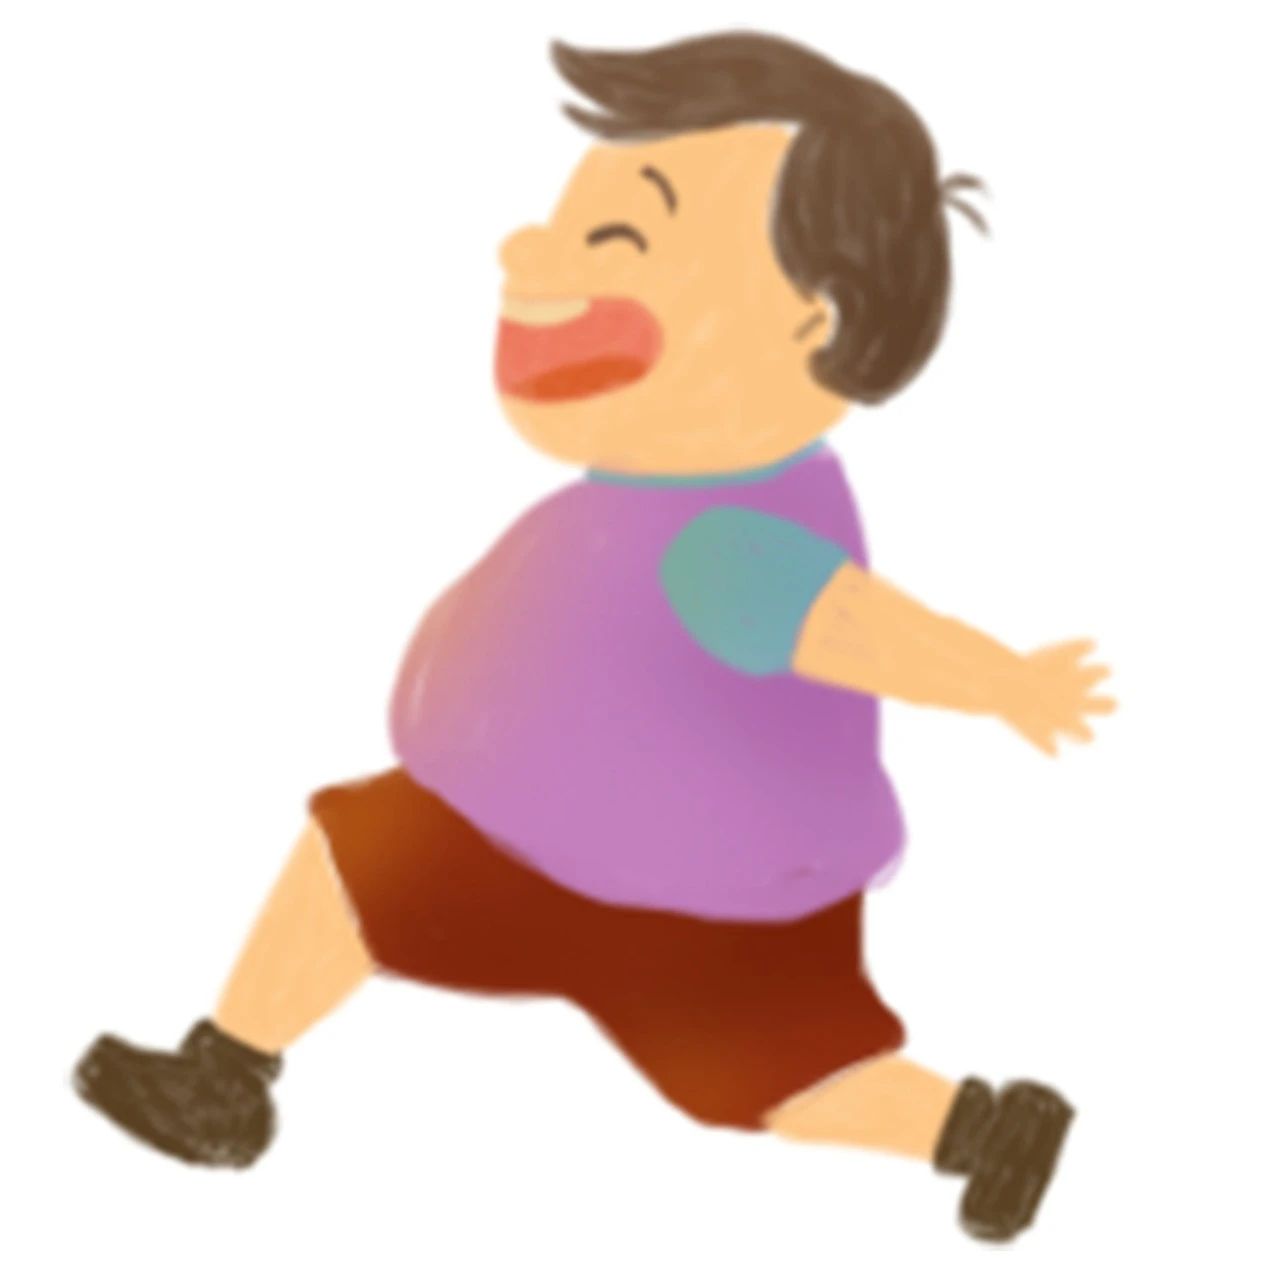 肥胖儿童更易发生功能性胃肠疾病